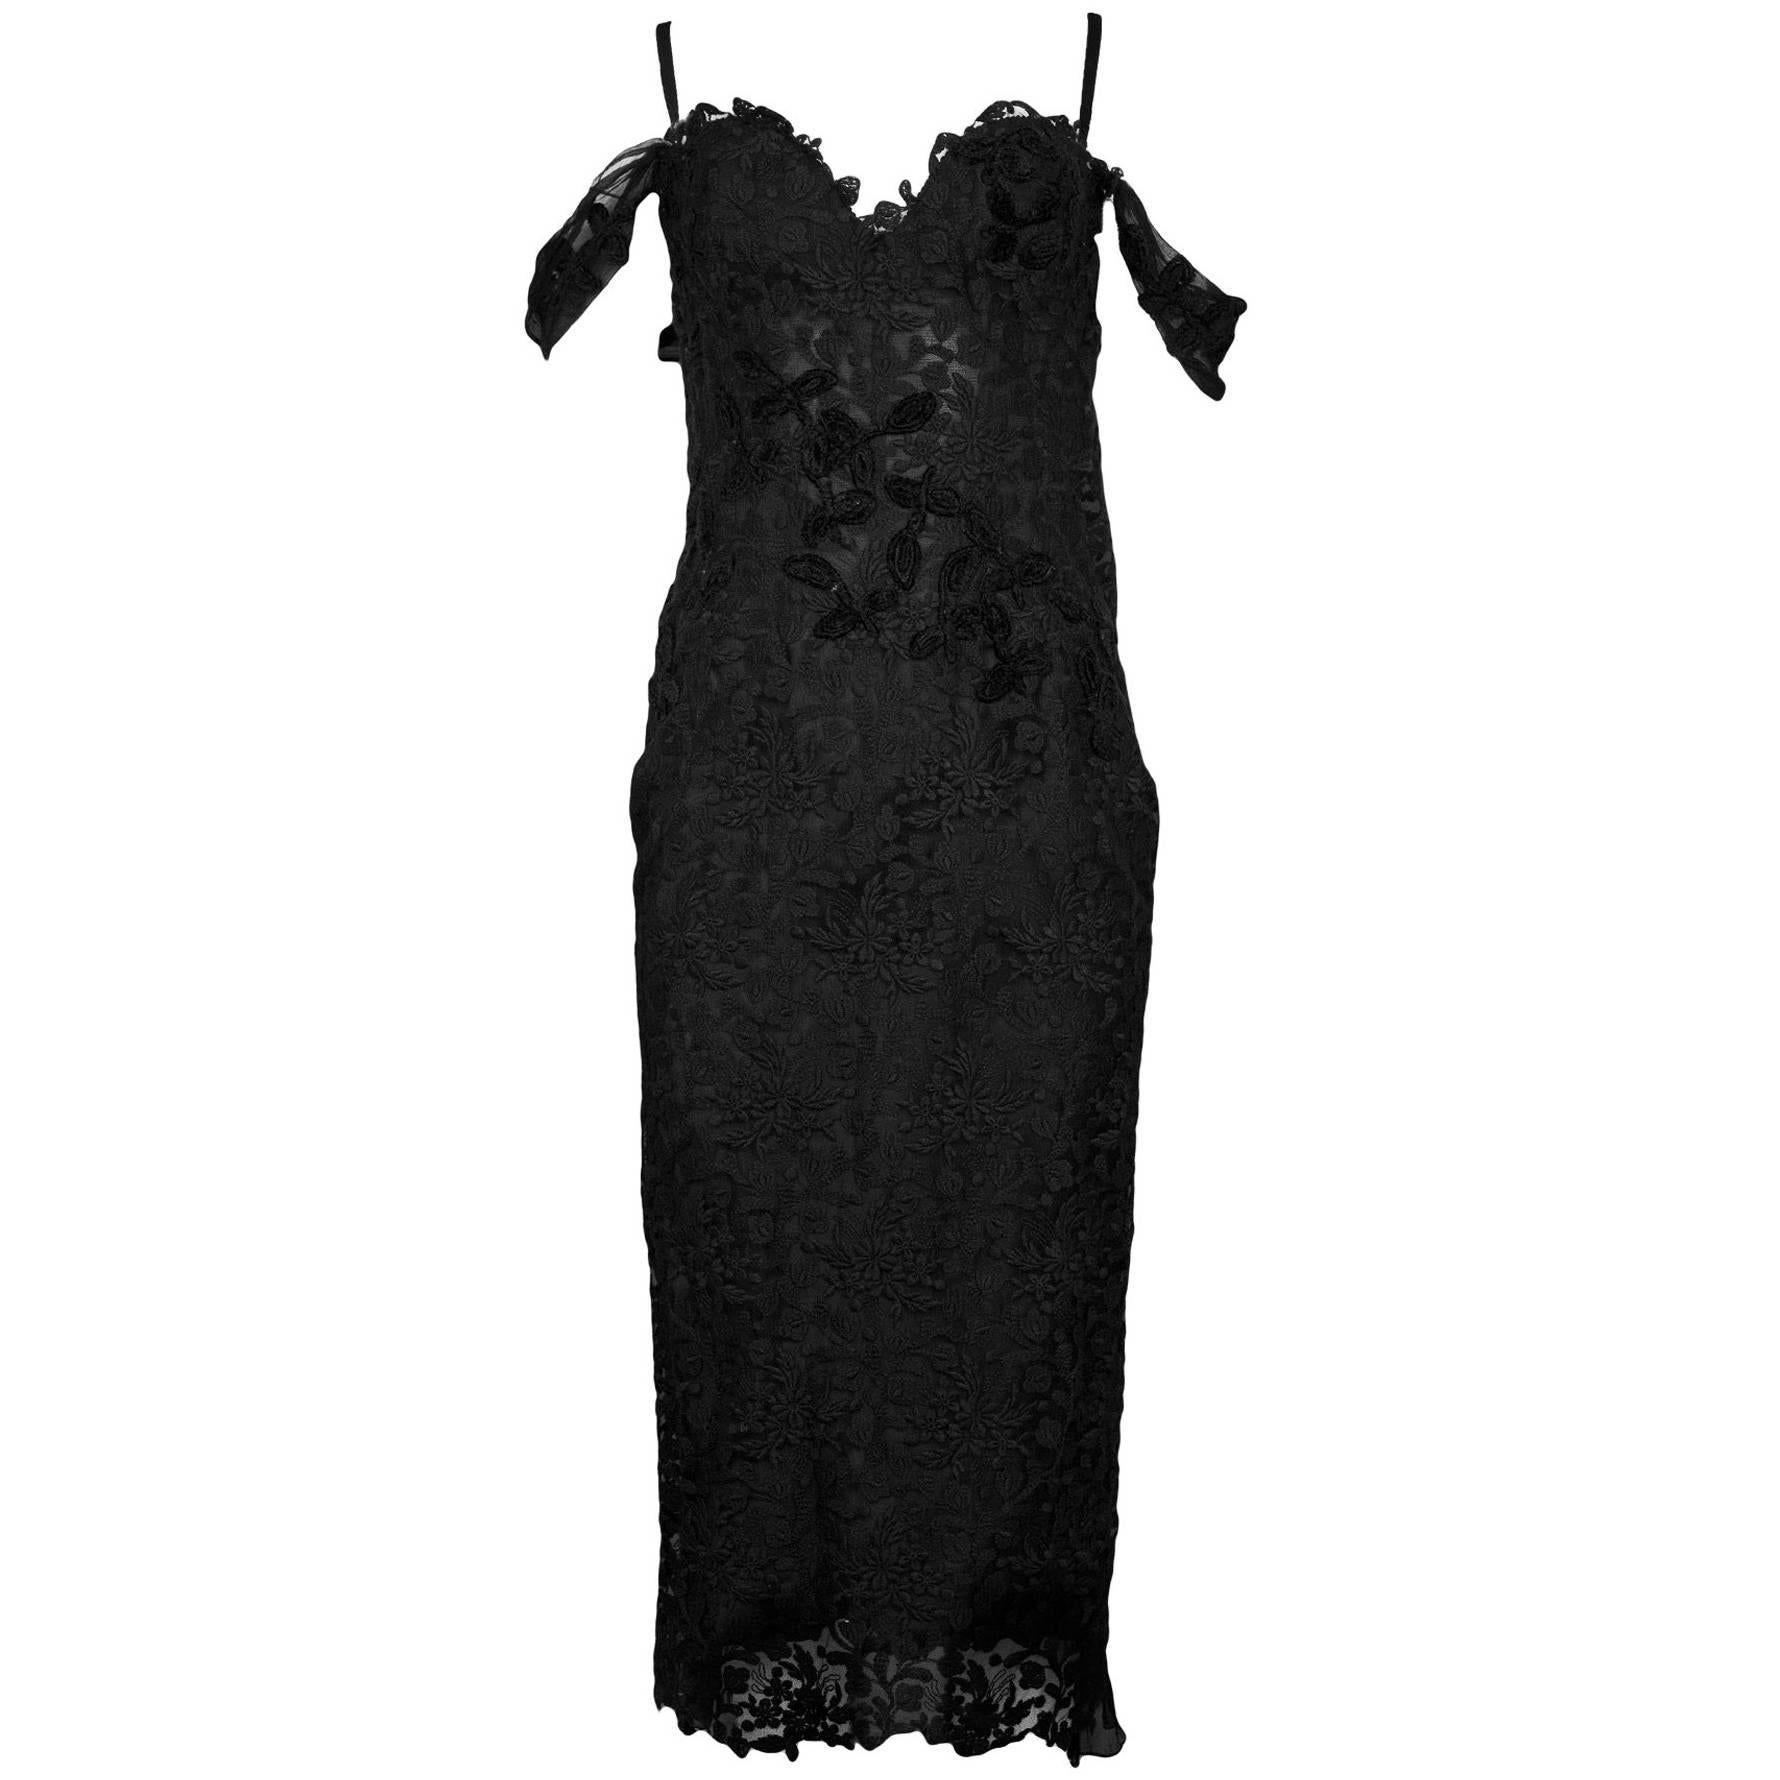 Ermanno Scervino Black Lace Cocktail Dress sz IT44